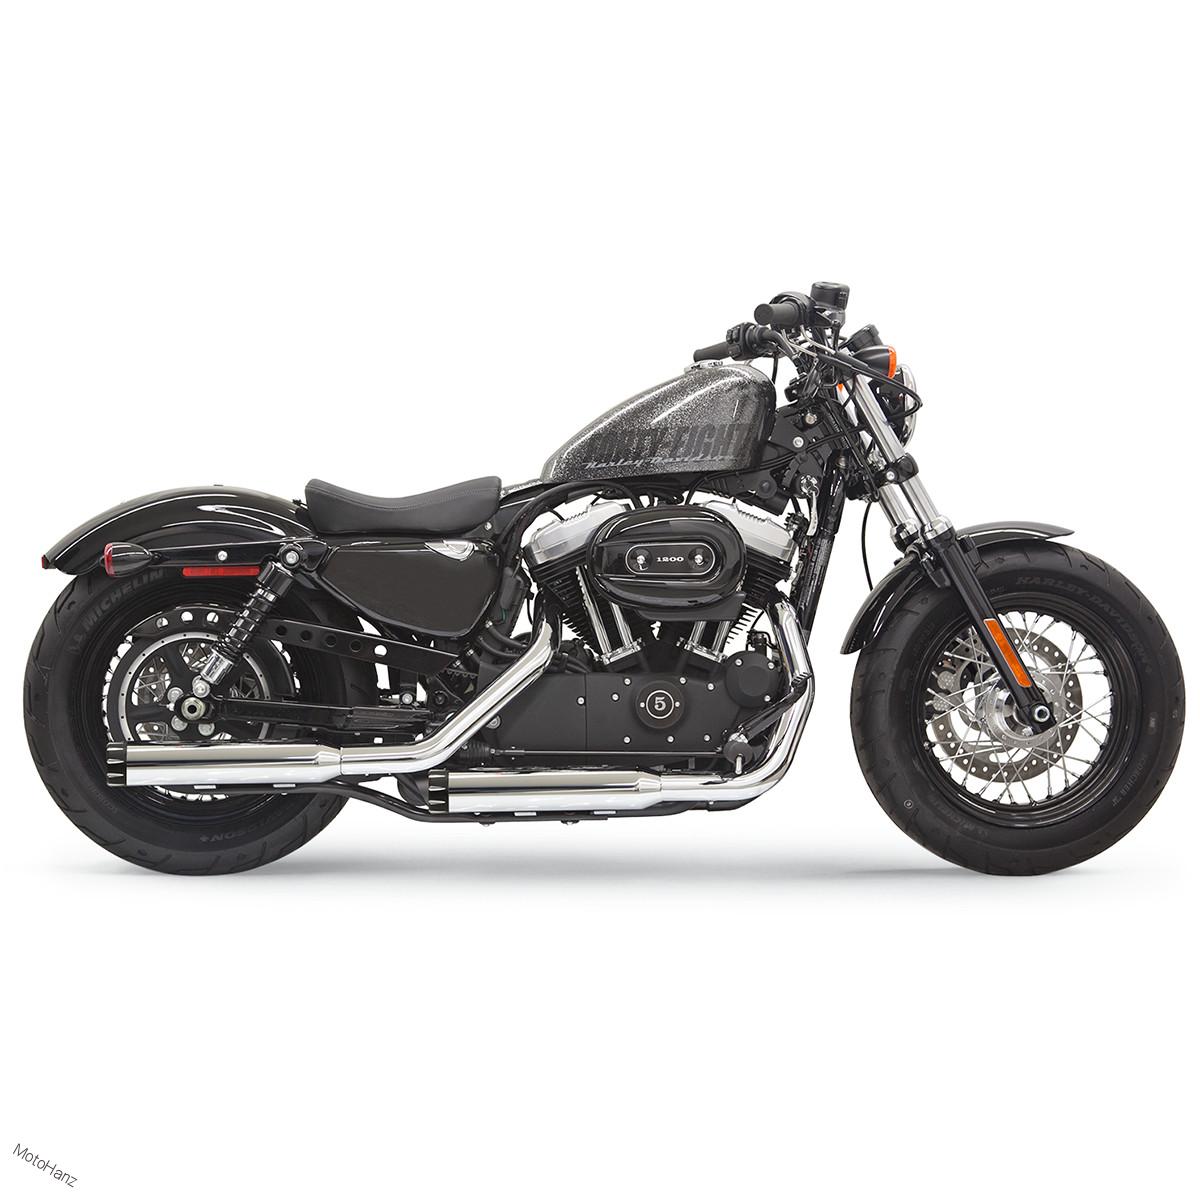 Výfuky Bassani Firepower 3" pro Harley Davidson Sportster 14-19